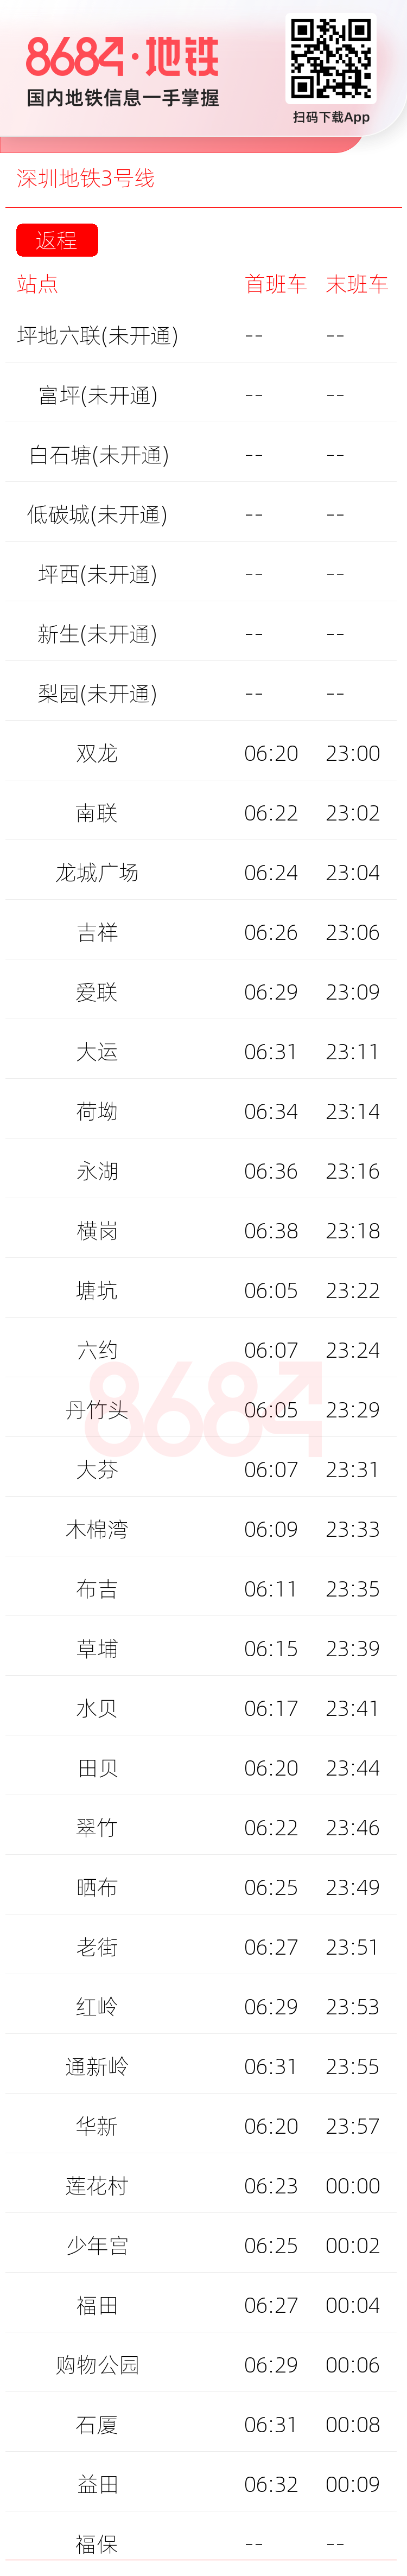 深圳地铁3号线运营时间表